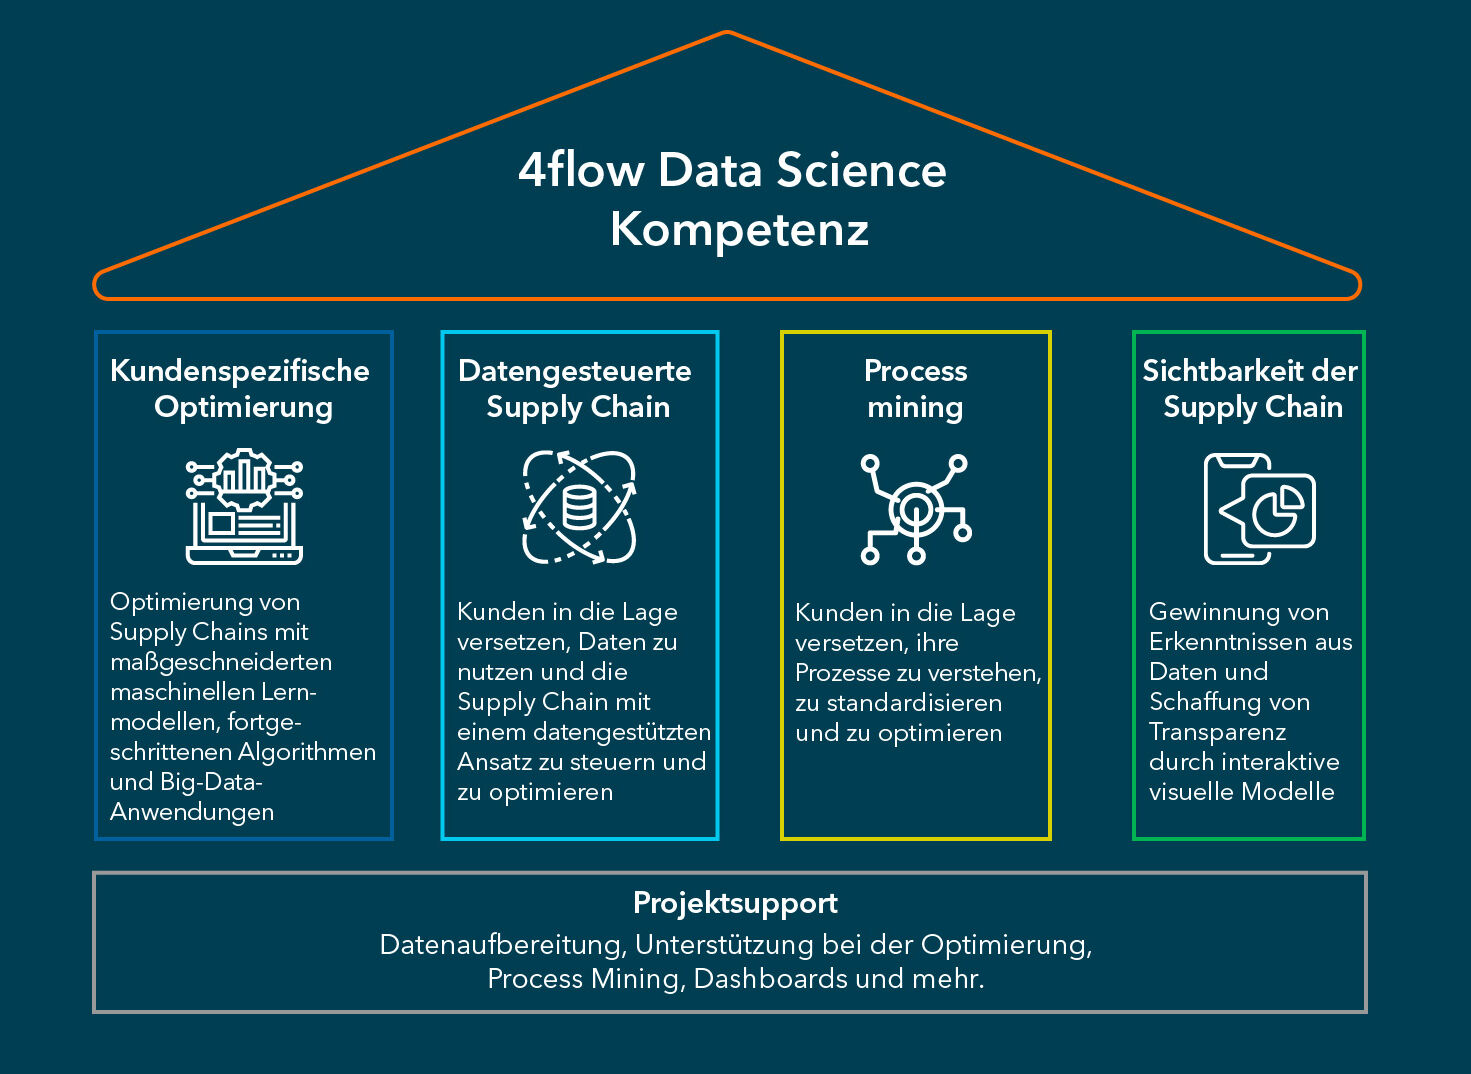 Data Science Portfolio: Strategische Ansätze von 4flow.